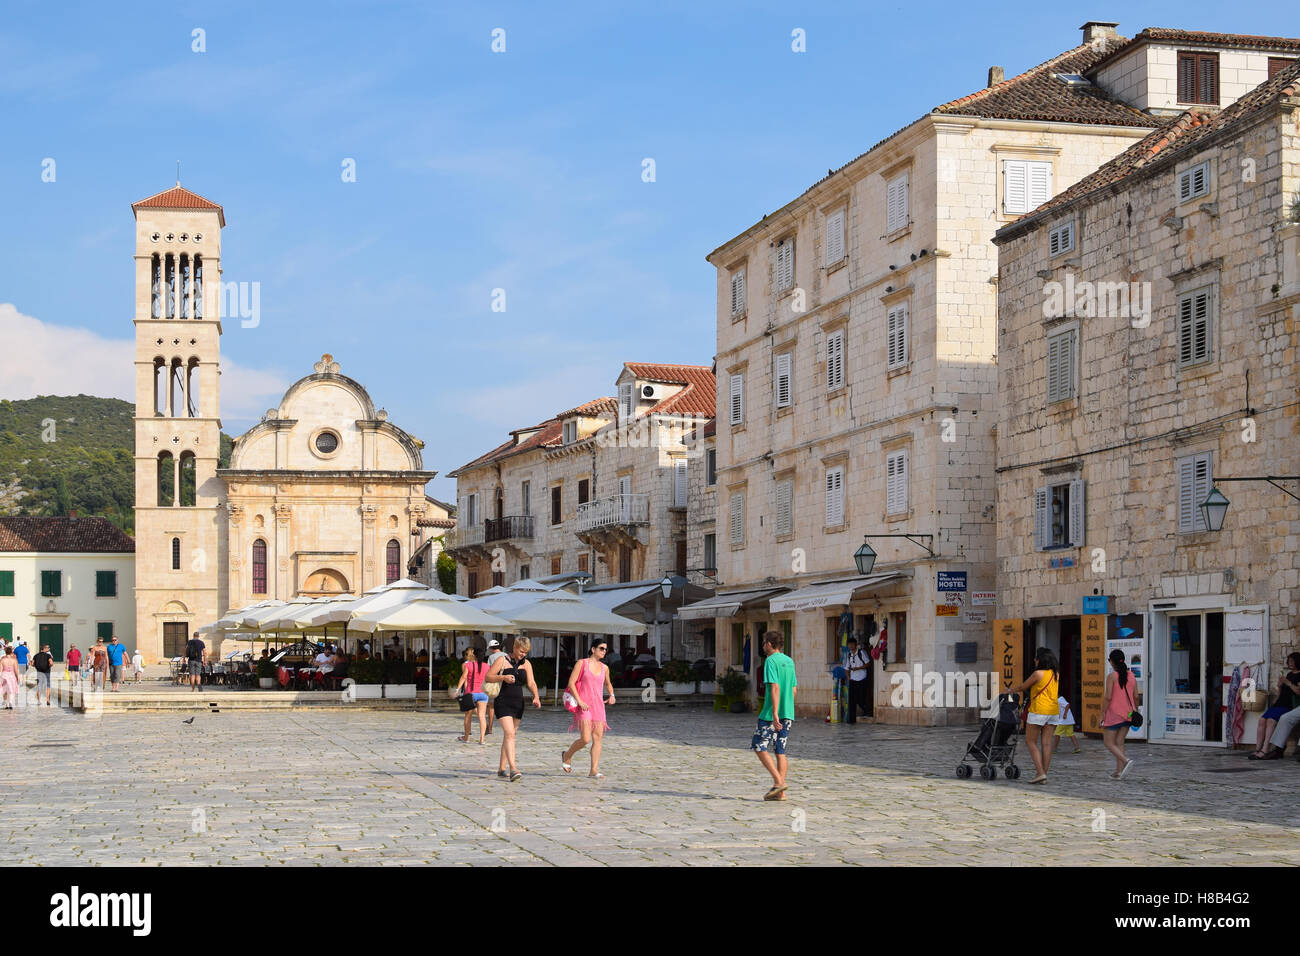 Hvar est une ville et port de l'île de Hvar, une destination touristique populaire en Croatie Banque D'Images